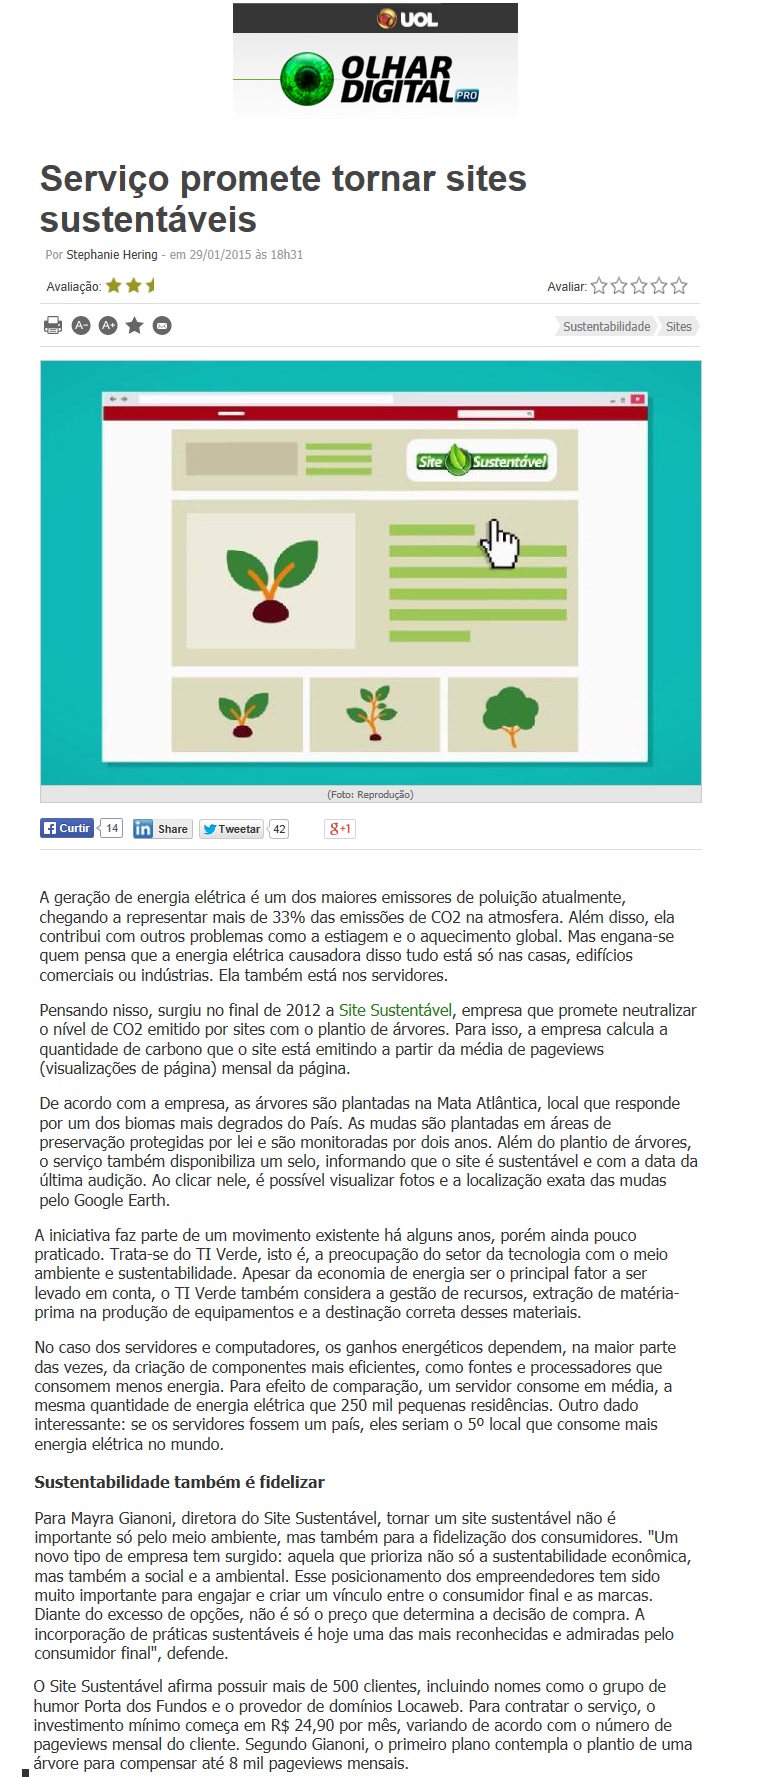 Site Sustentável no Olhar Digital 29.01.2015